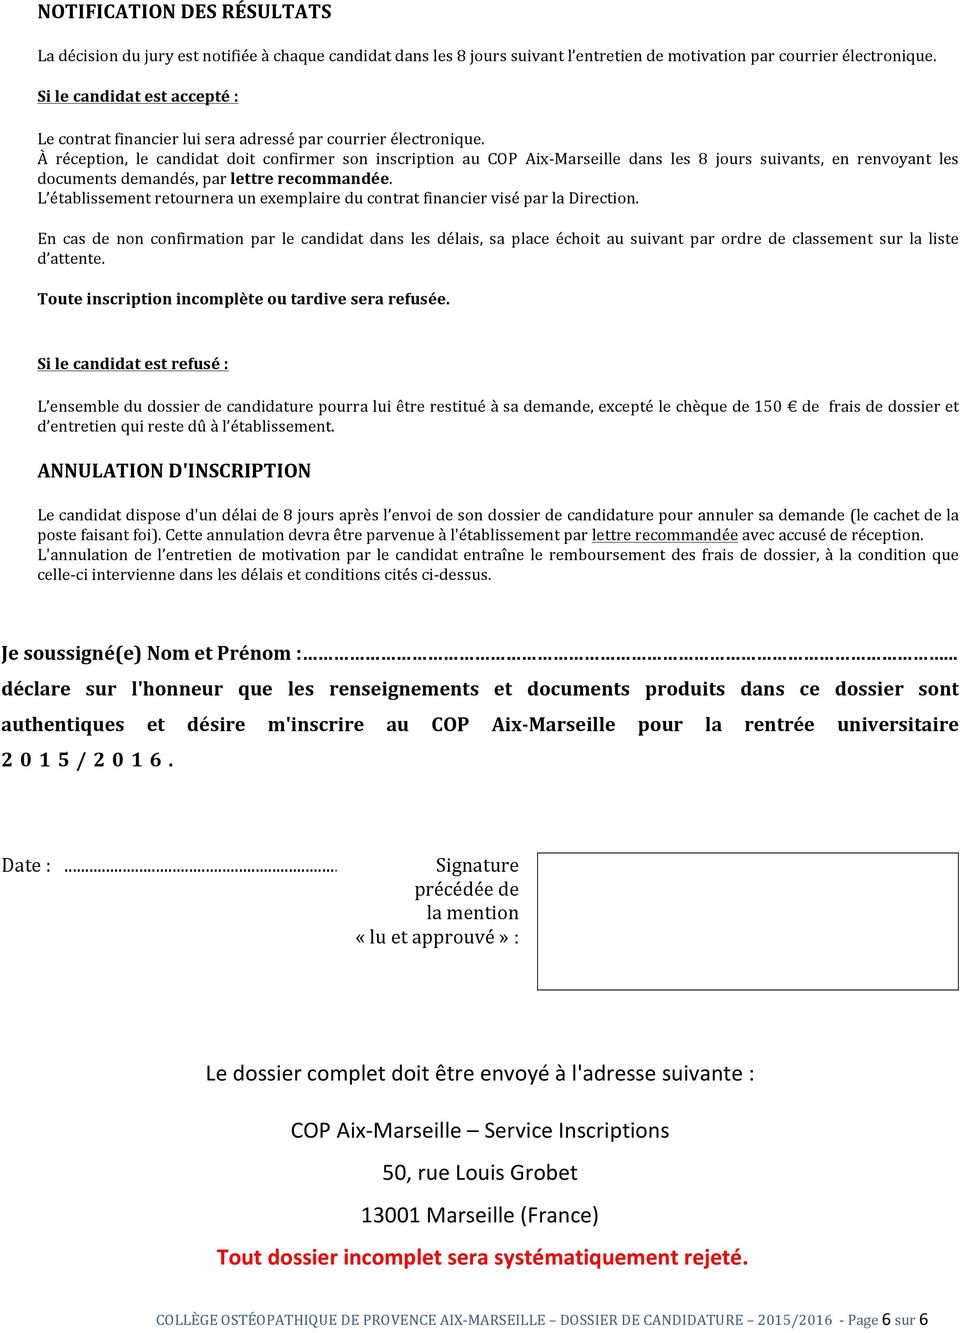 À réception, le candidat doit confirmer son inscription au COP Aix- Marseille dans les 8 jours suivants, en renvoyant les documents demandés, par lettre recommandée.